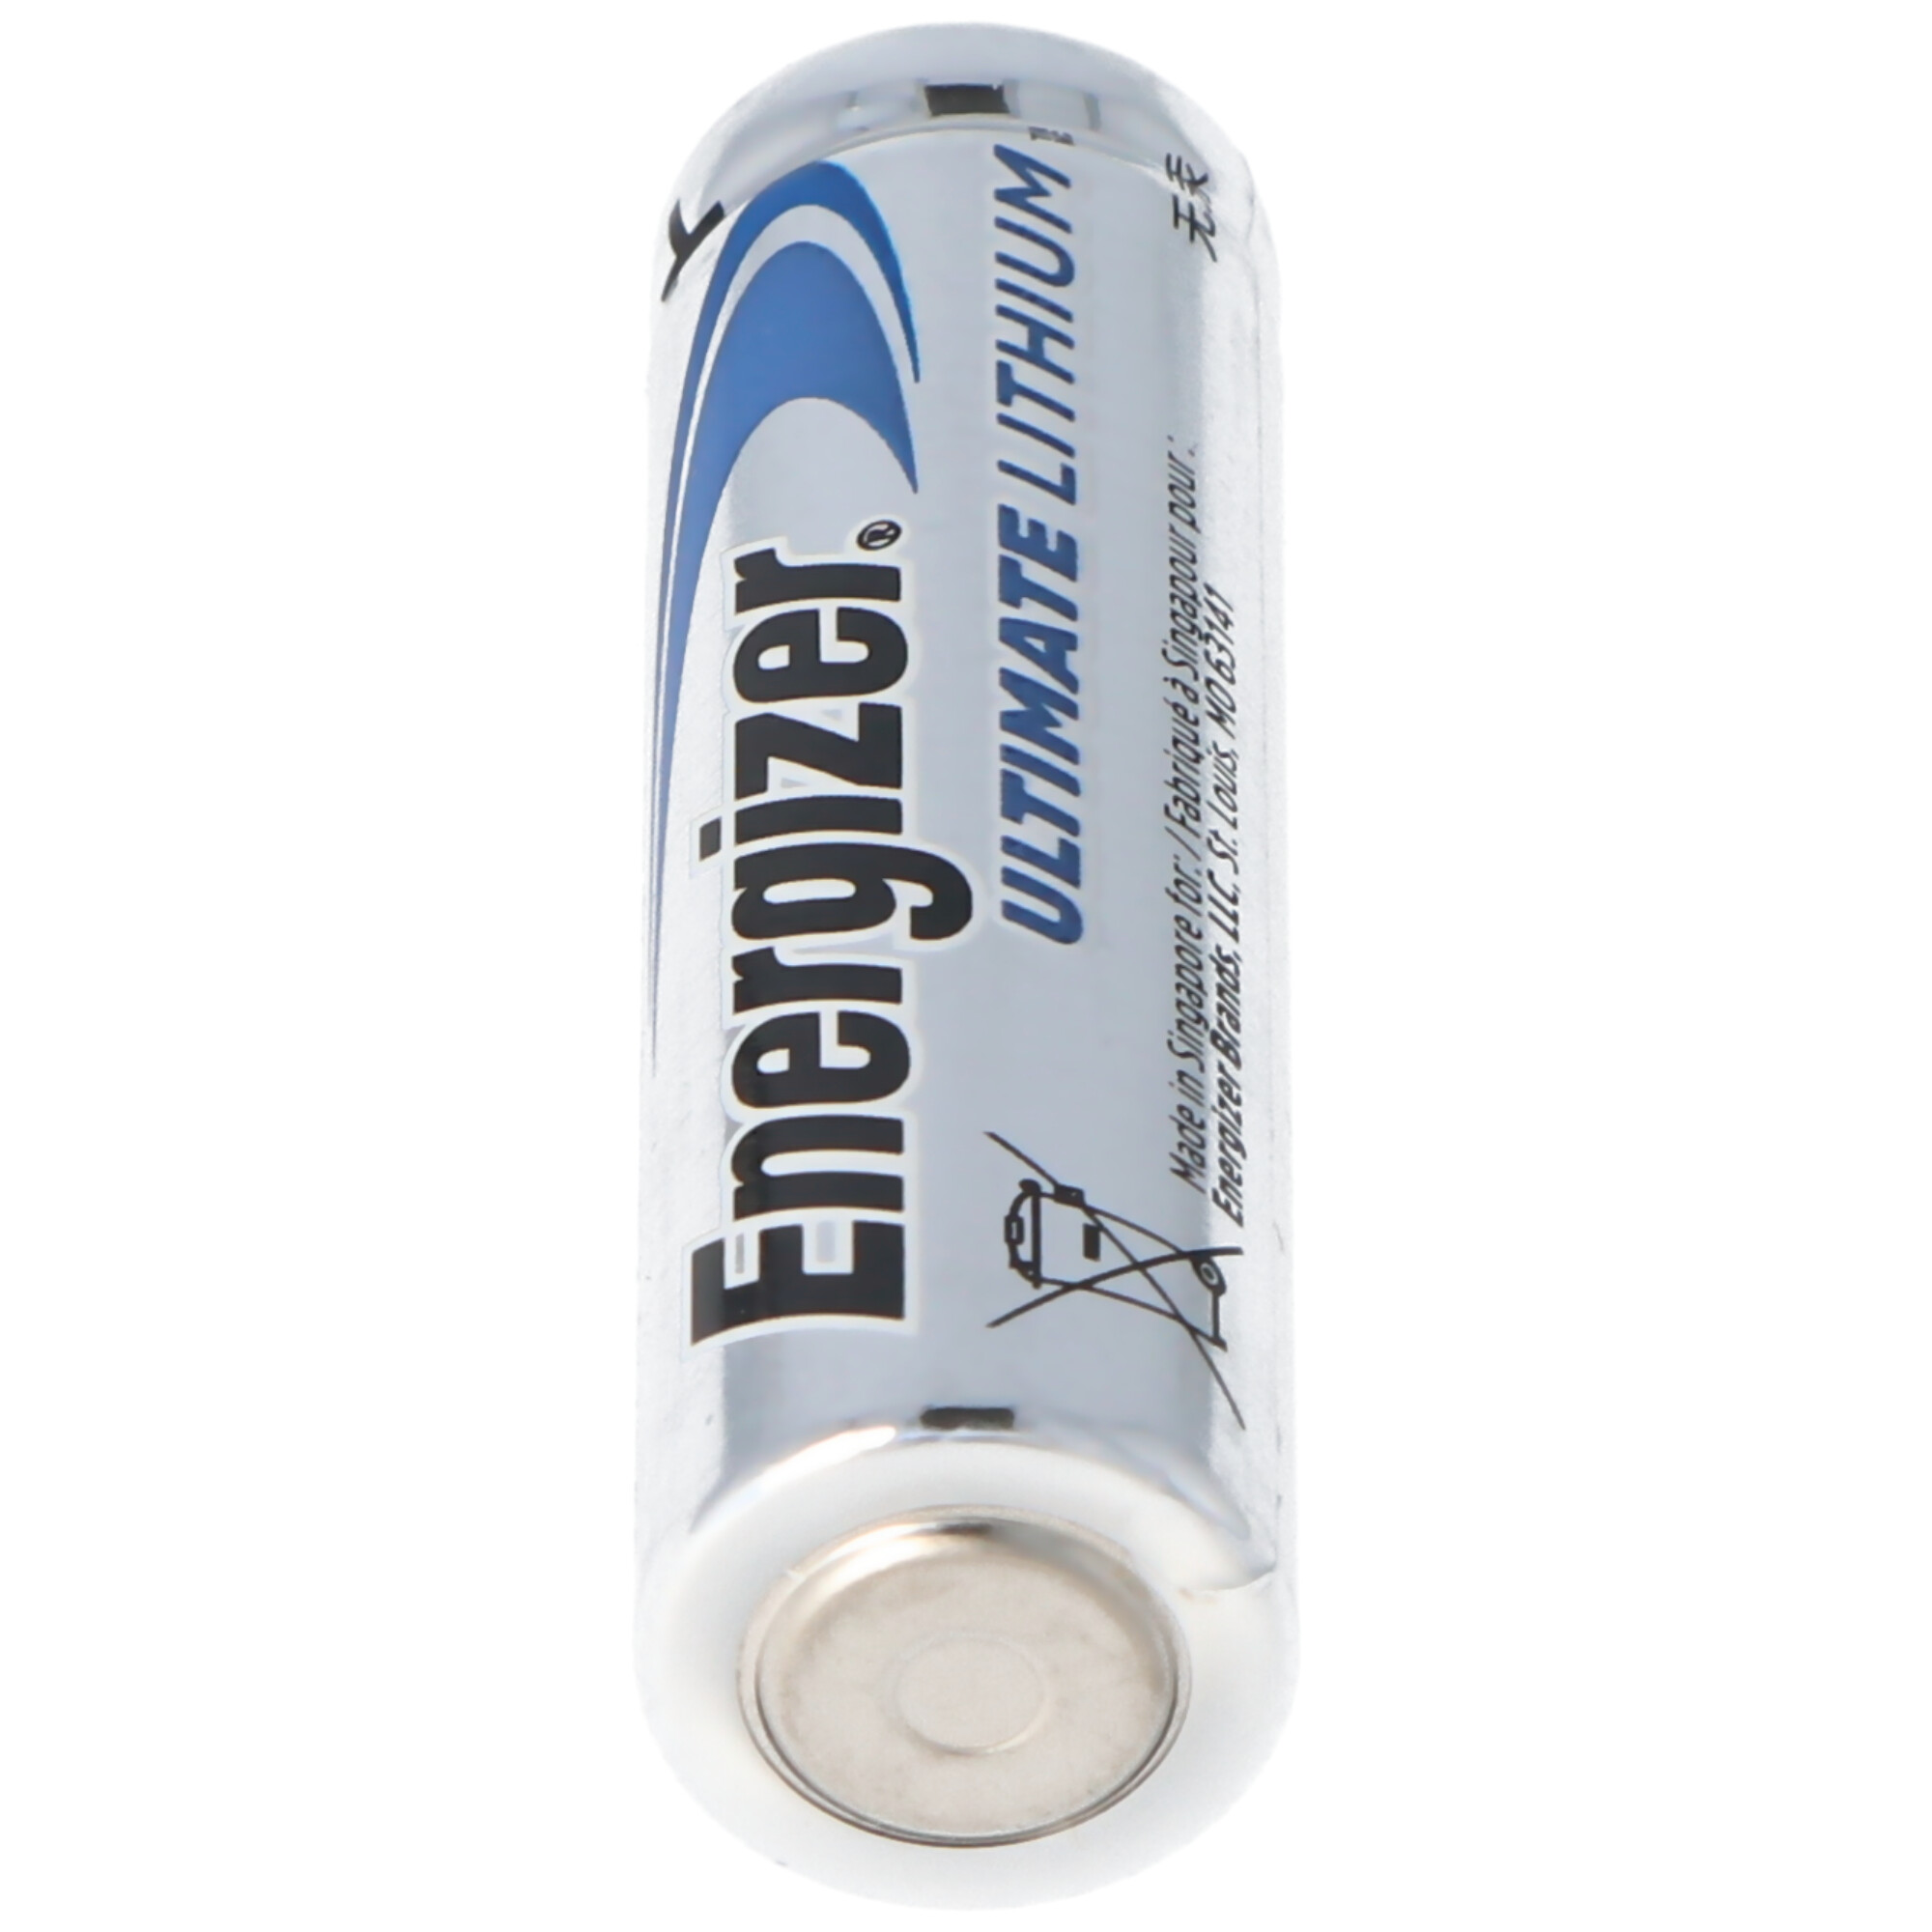 Energizer L91 Lithium Batterie AA 1,5 Volt, 3000mAh 4er Blister MIgnon AA LR6